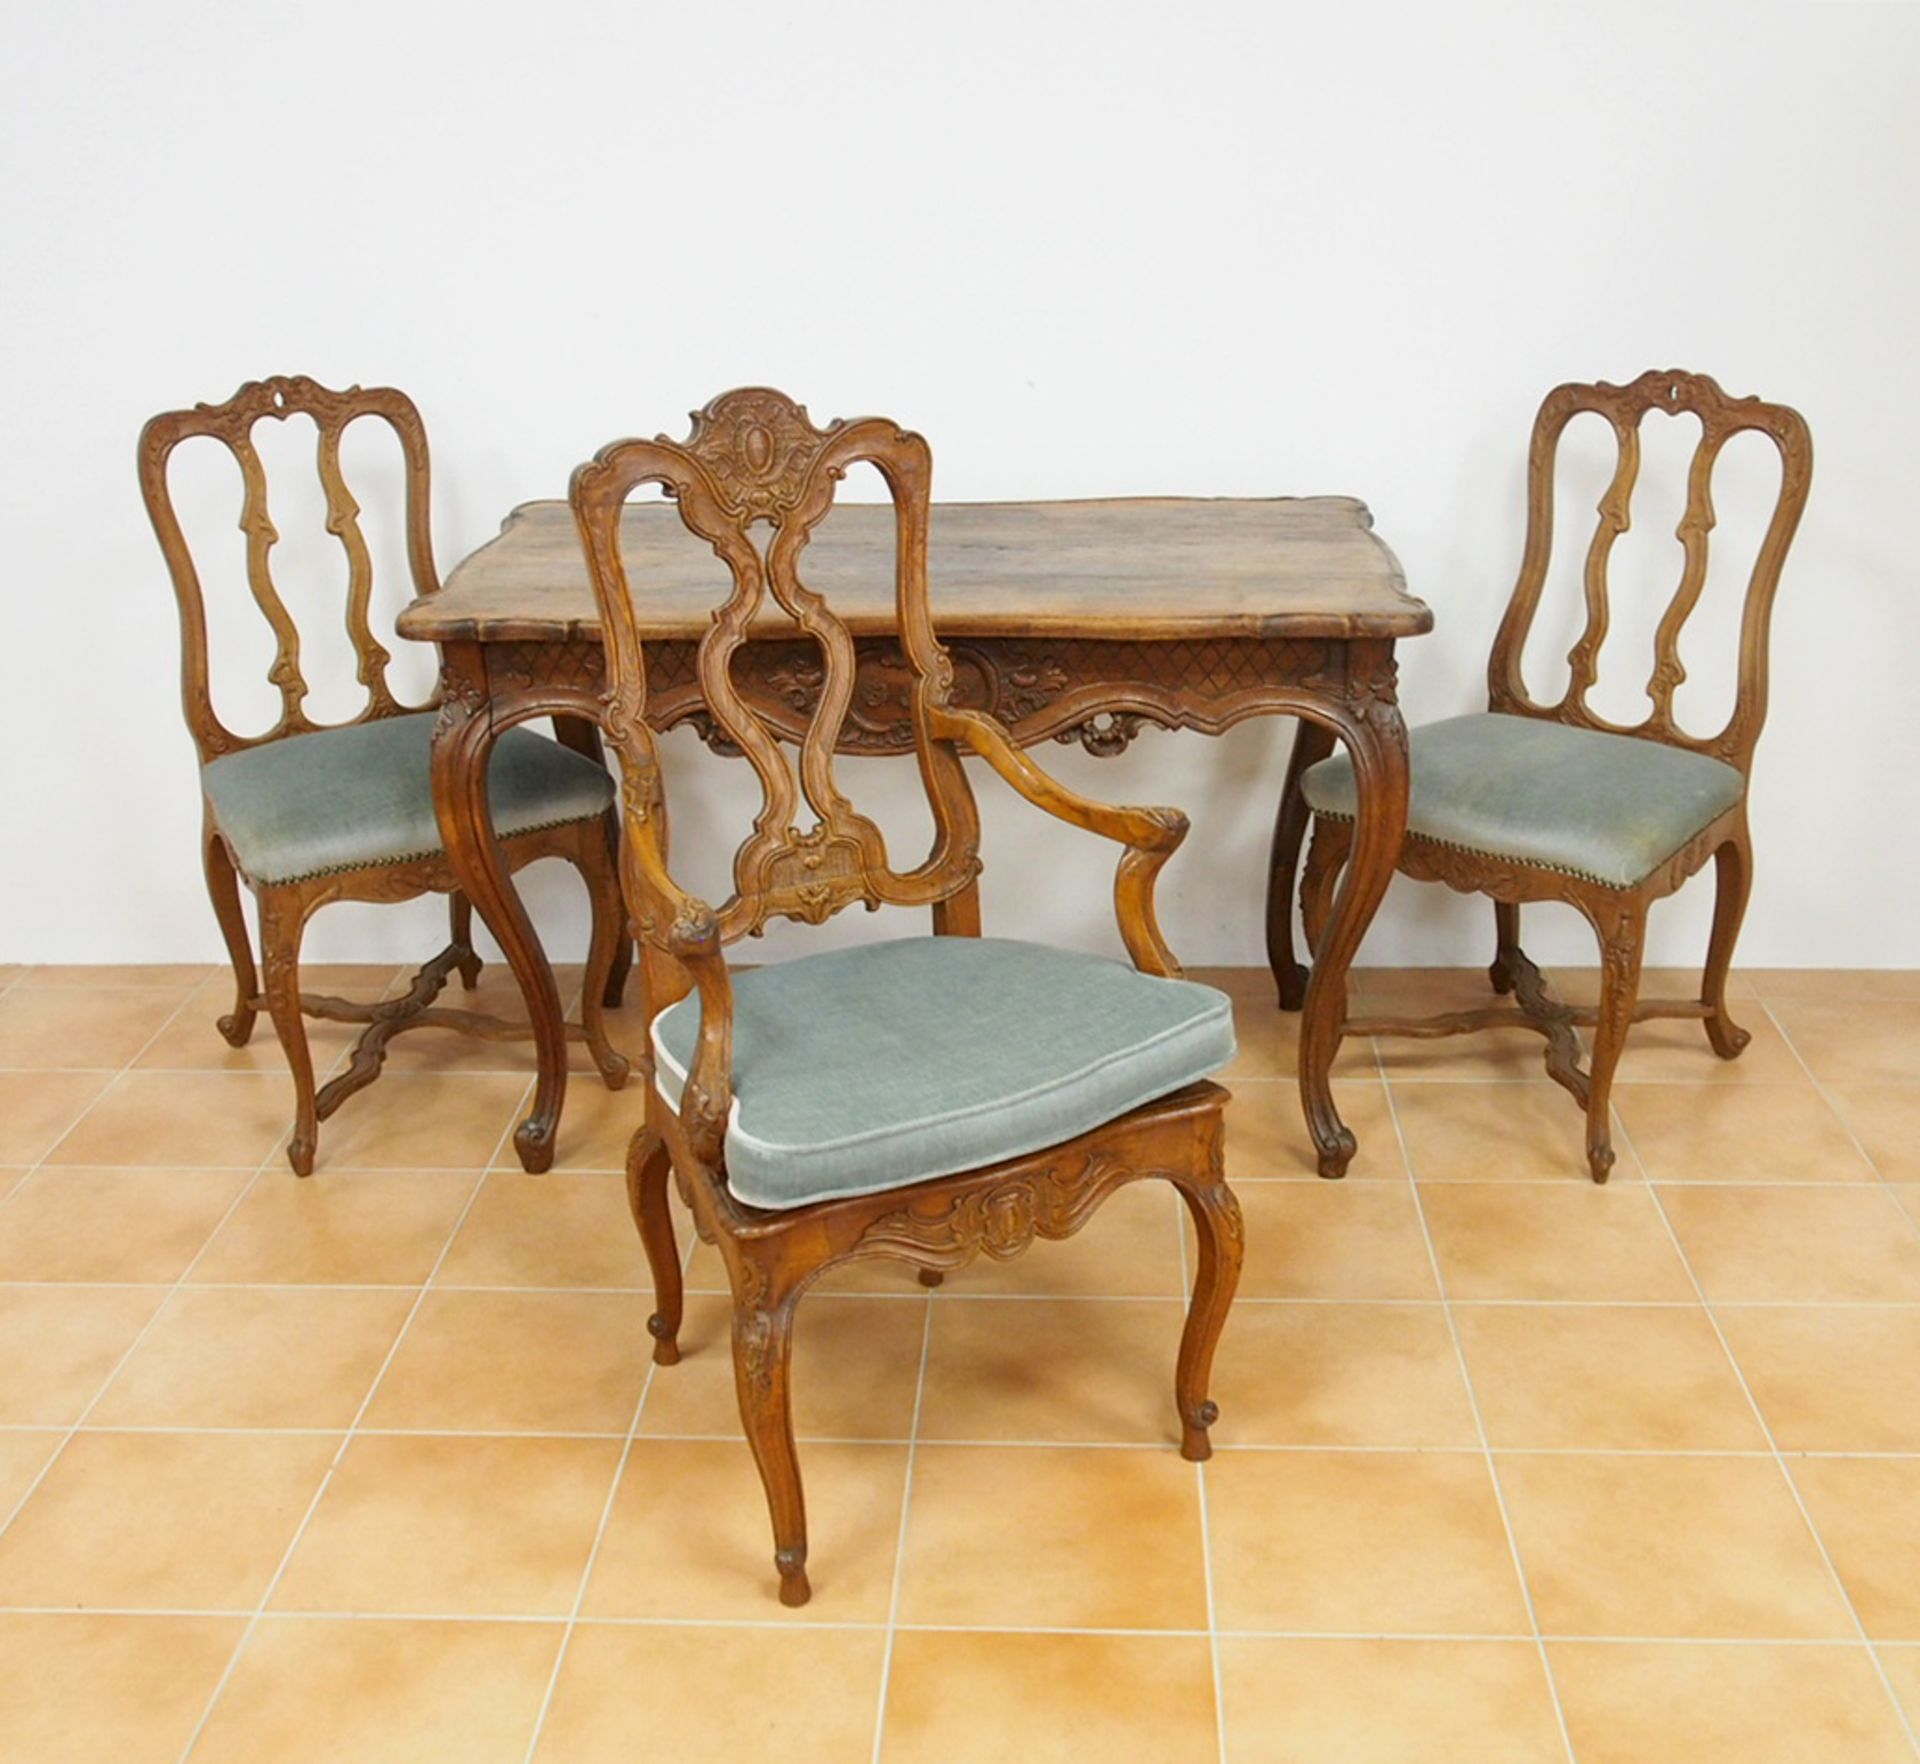 Tisch, zwei Stühle, ein Armlehnstuhl